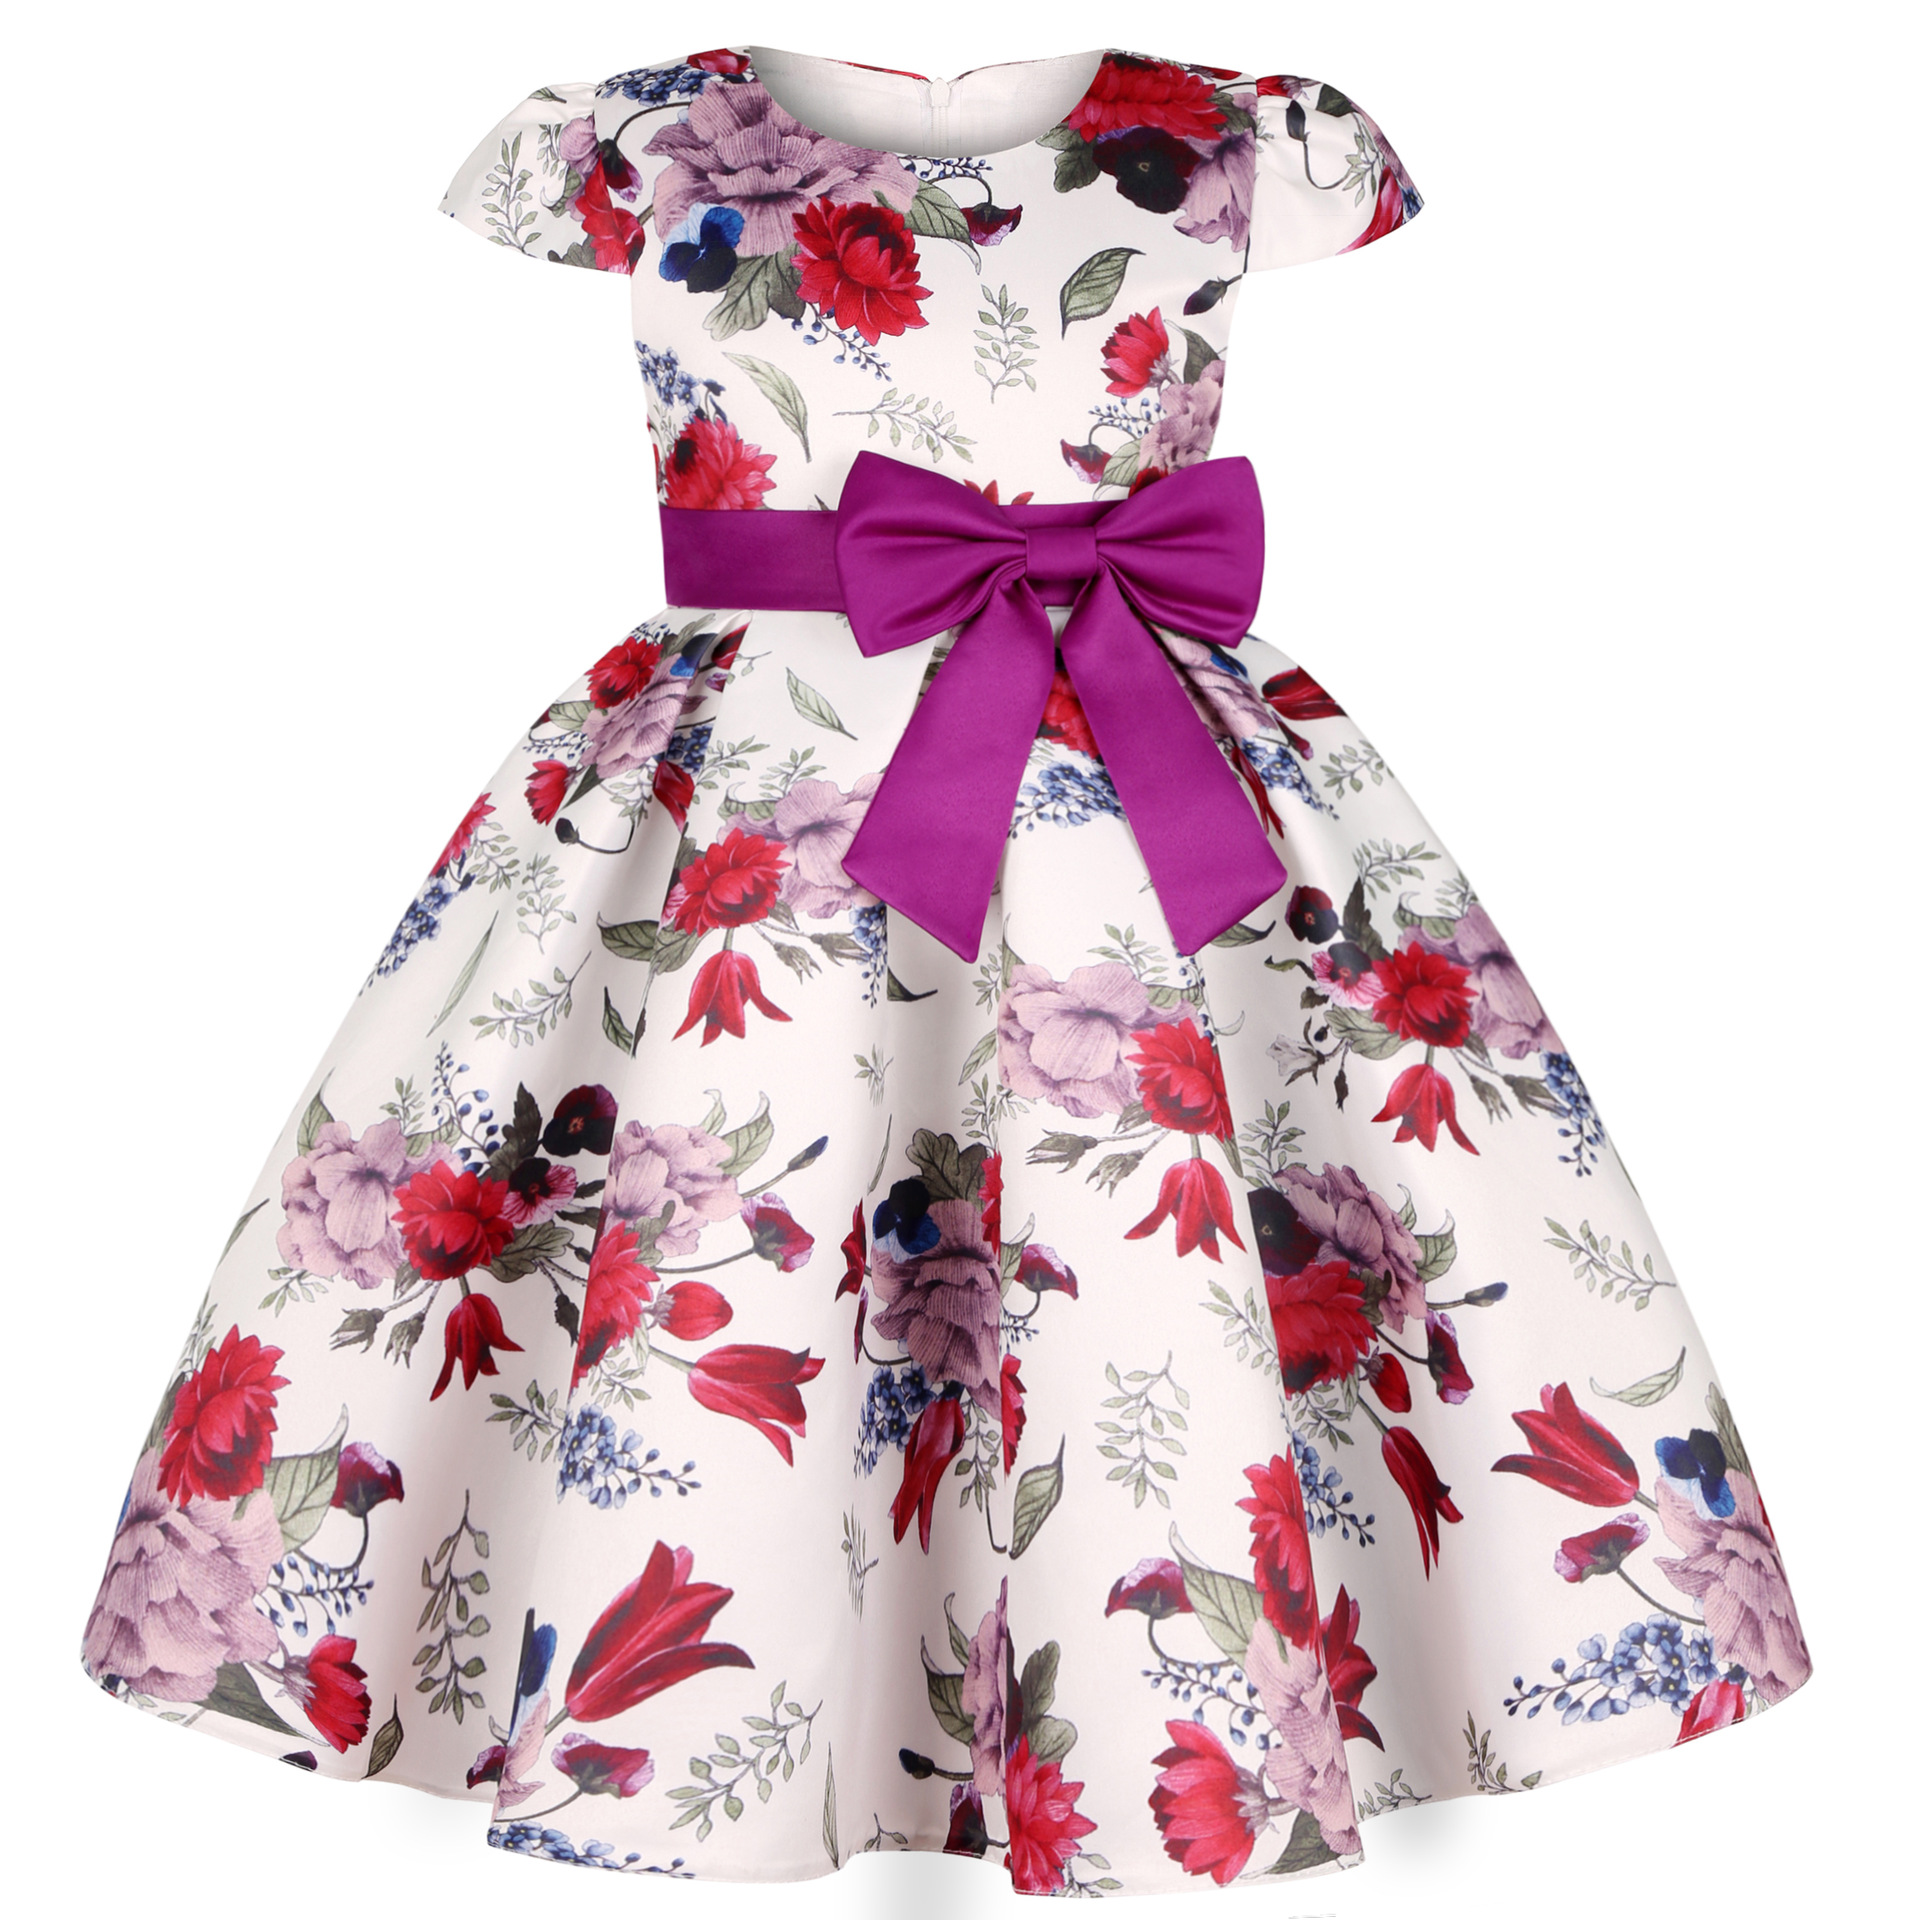 come4buy.com-Girls Kids Flower Elegant Casual Princess Party Dresses